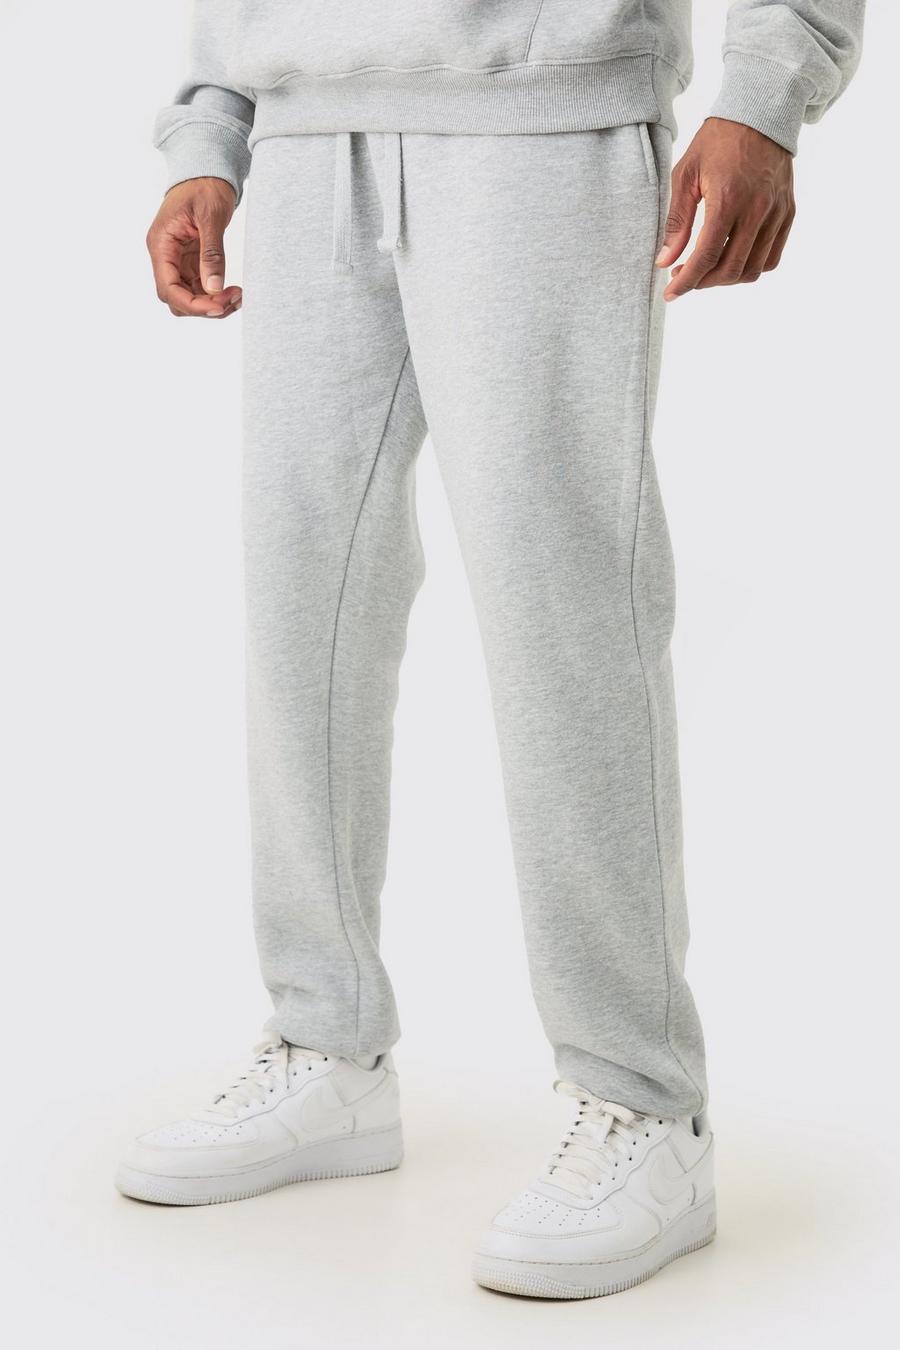 Pantalón deportivo Tall básico ajustado gris jaspeado, Grey marl image number 1